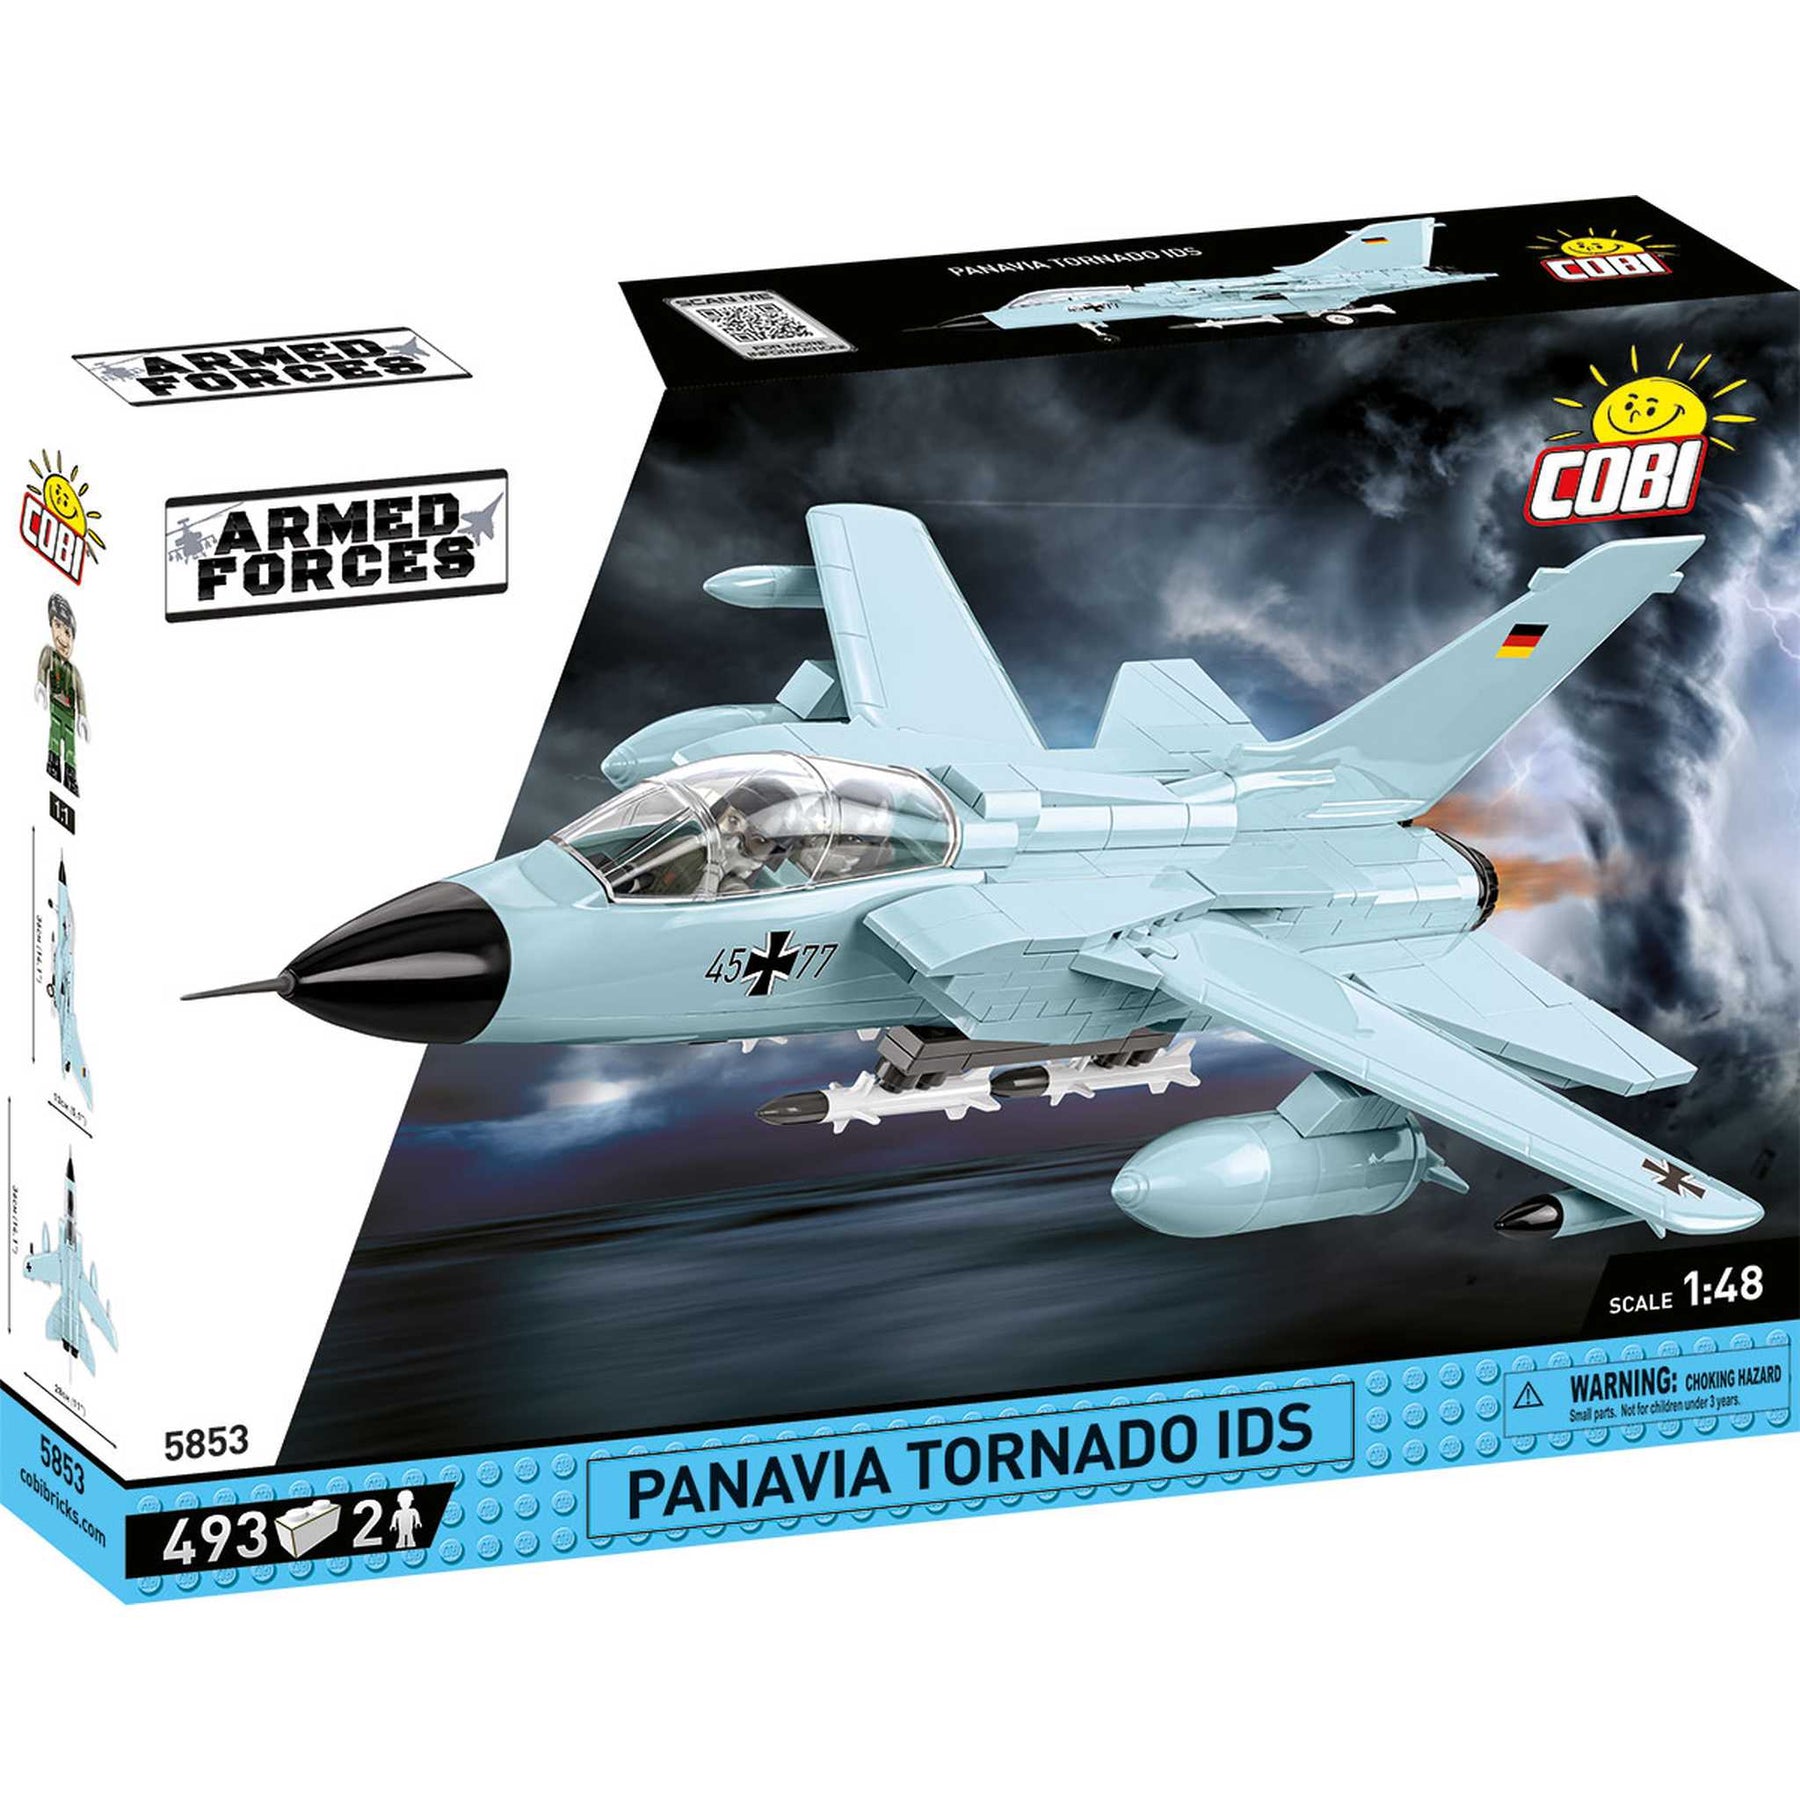 5853 - Panavia Tornado IDS (Cobi)